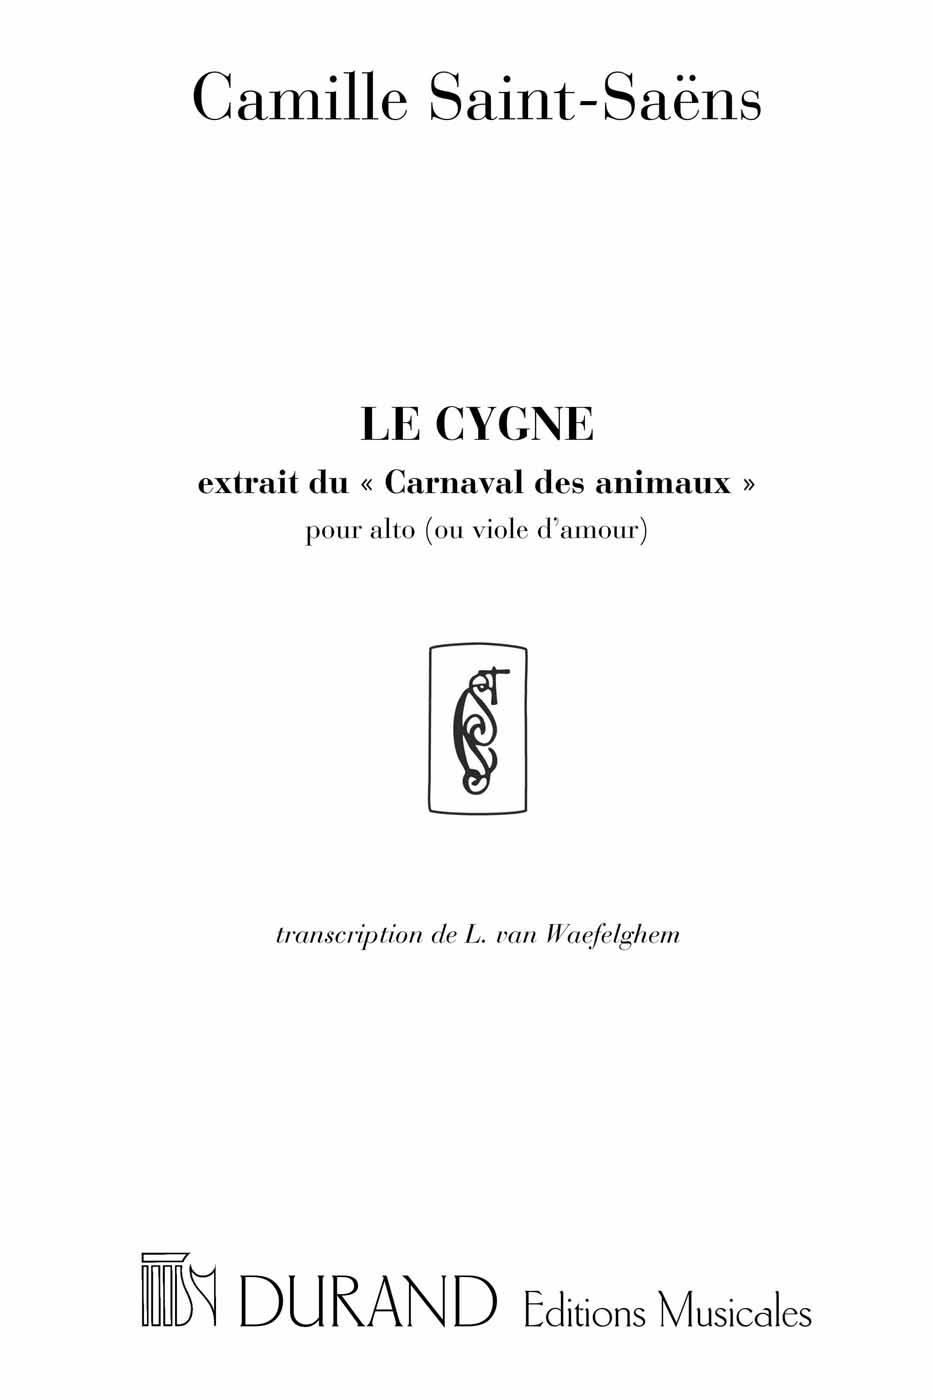 Le Cygne, extrait du Carnaval des animaux, pour alto ou viole d'amour et piano